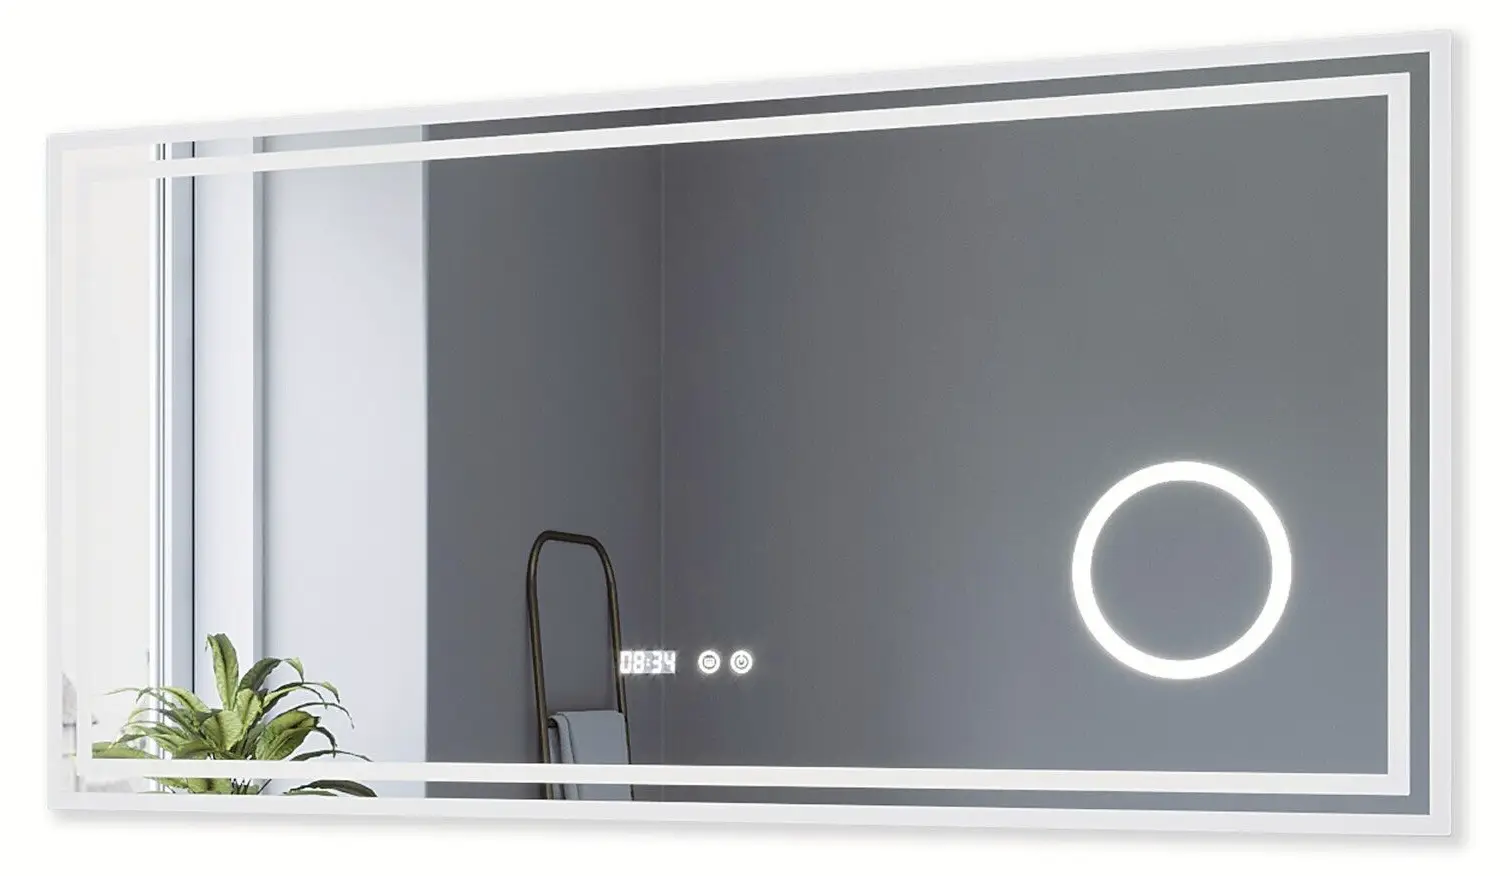 Kosmetikspiegel mit Uhr Badspiegel LED